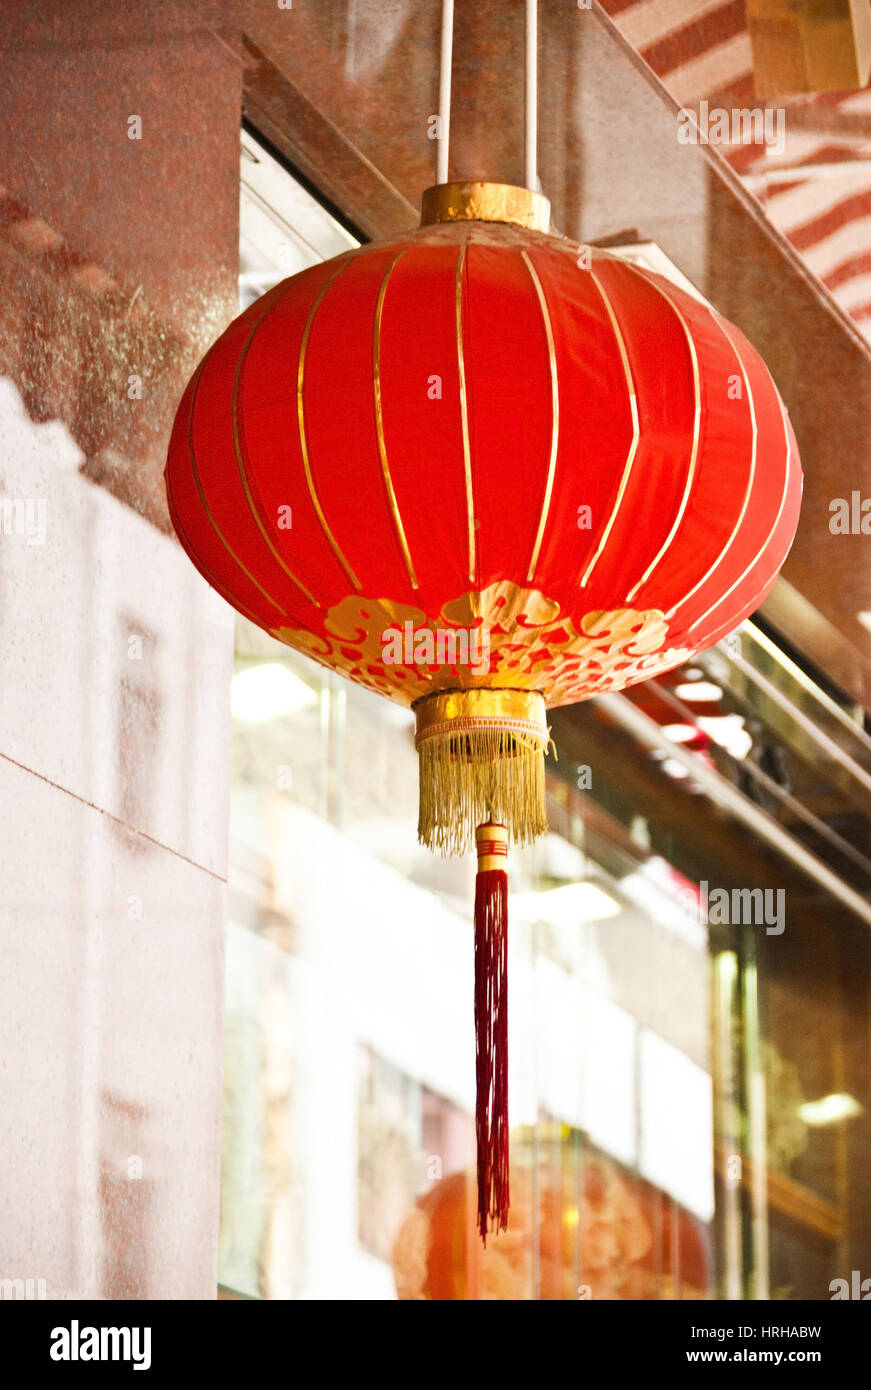 Lampion, China - lampion, China Stock Photo